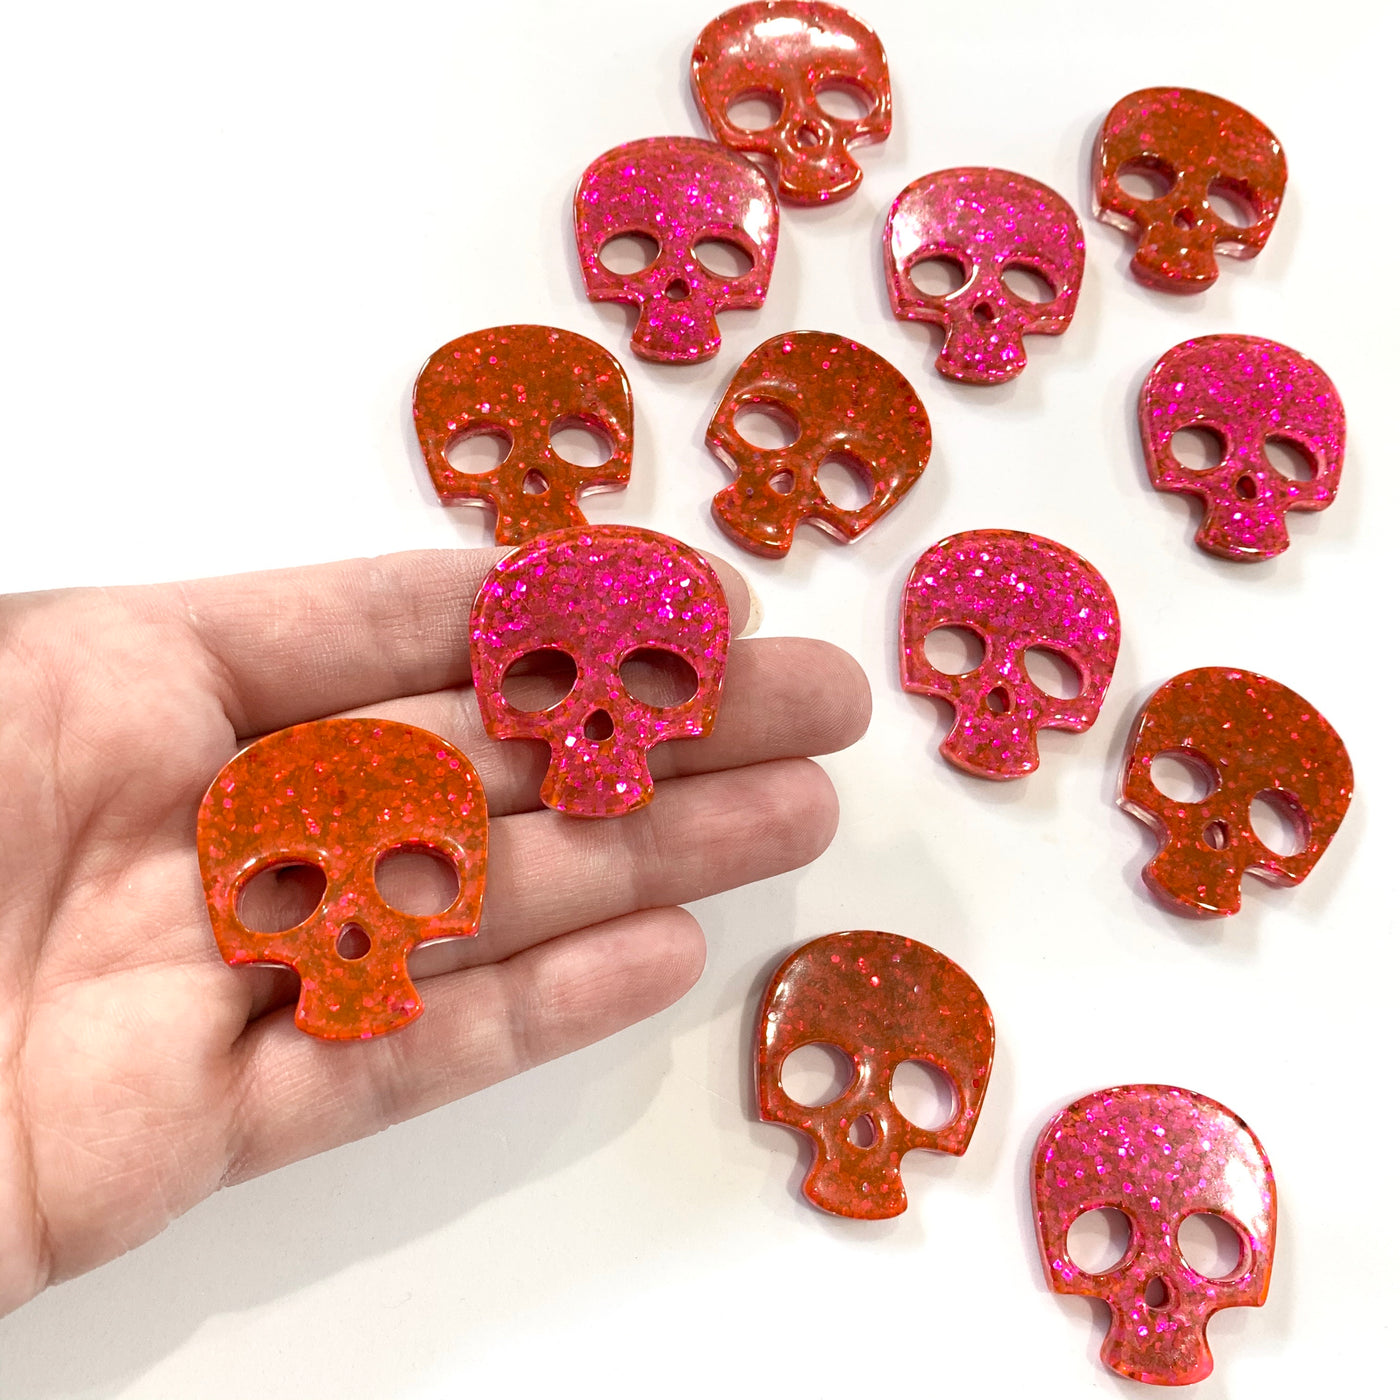 Reversible Glitter Skull Resins - Red & Hot Pink!